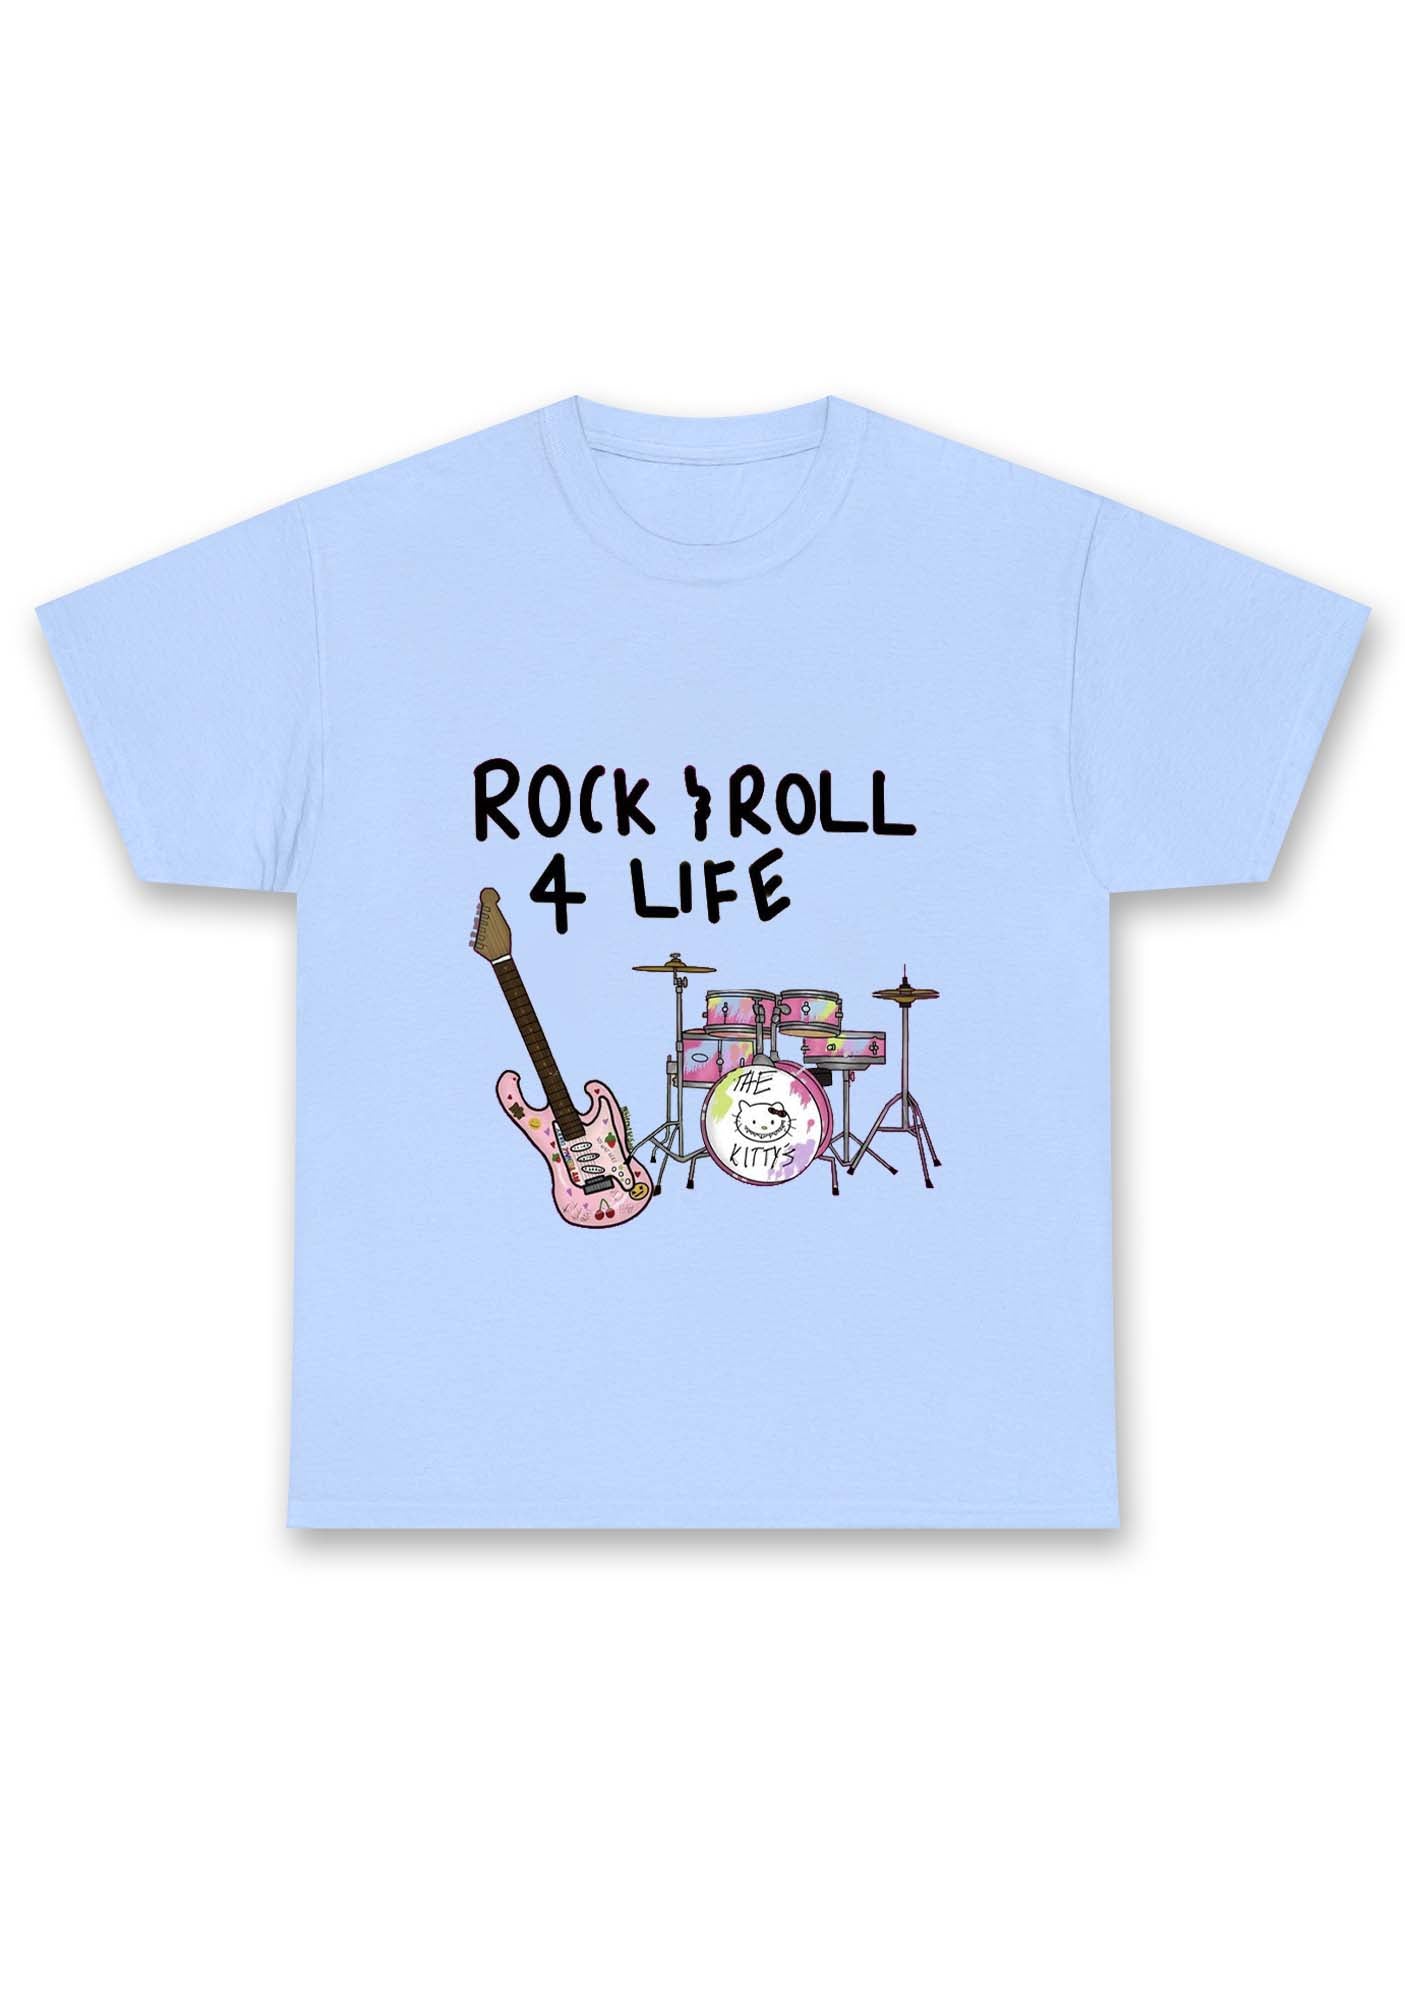 Rock Roll 4 Life Chunky Shirt